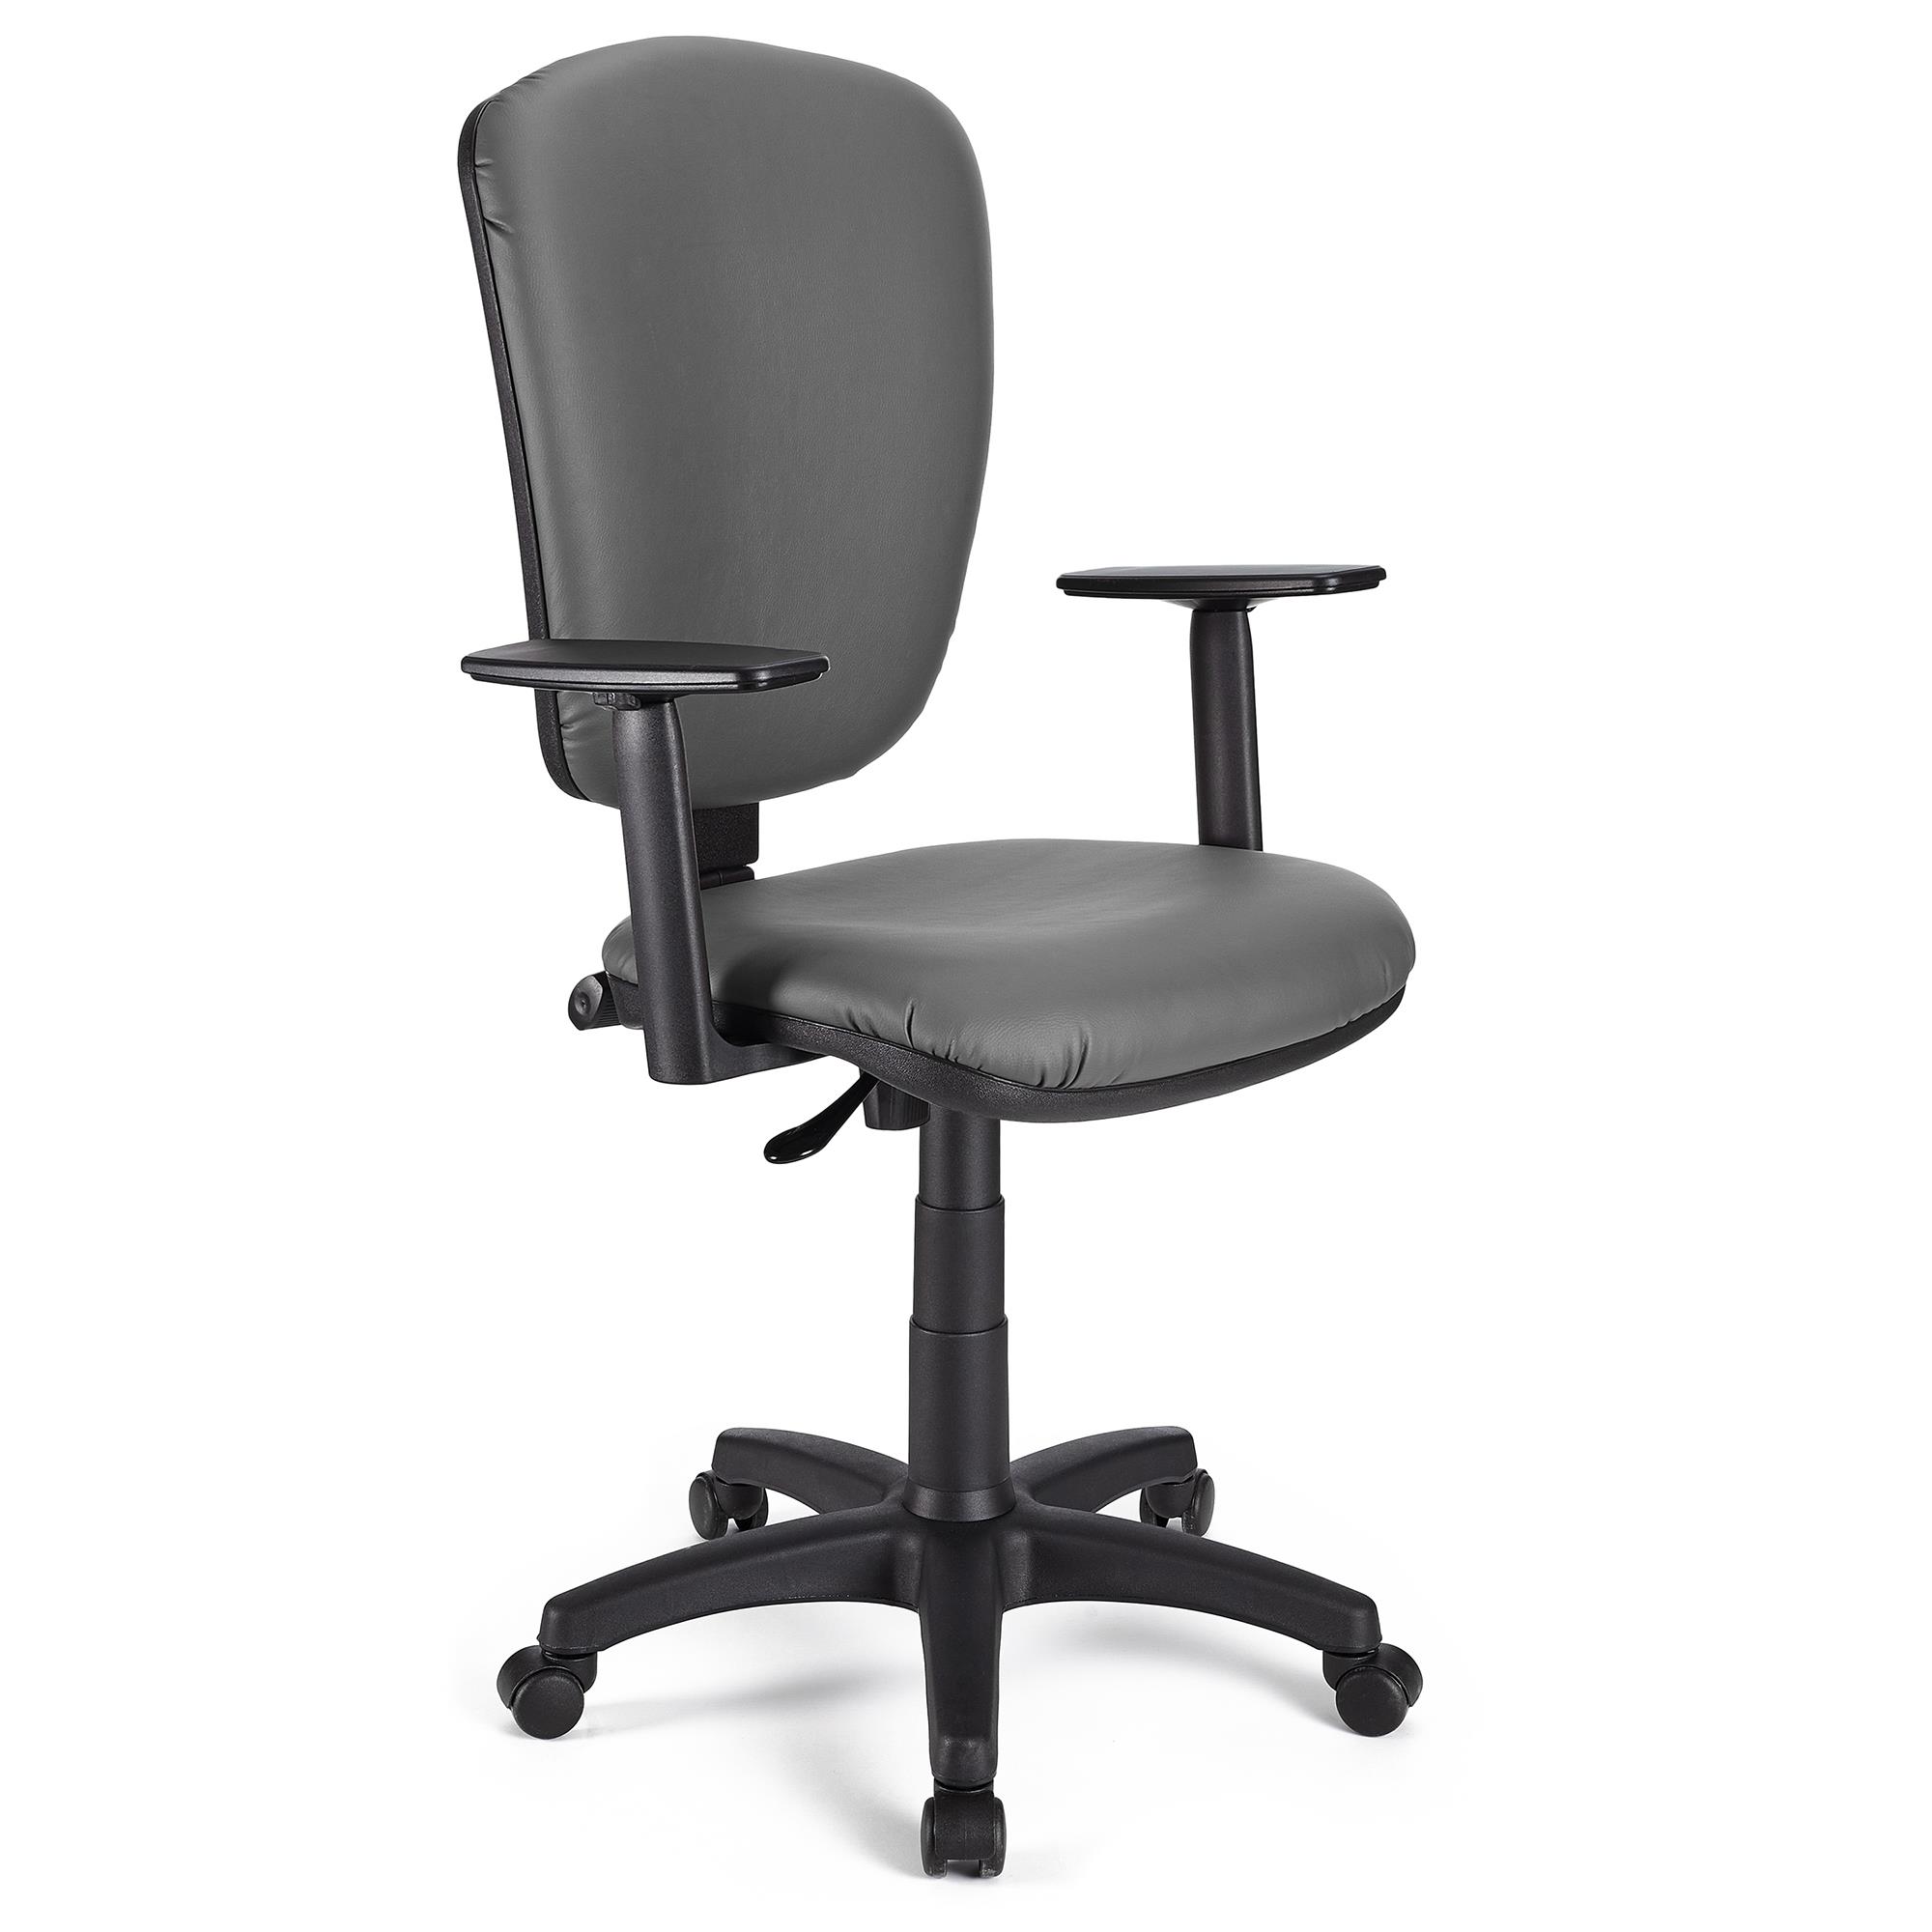 Bürostuhl KALIPSO PLUS LEDER, verstellbare Rücken- und Armlehnen, robust, Farbe Grau